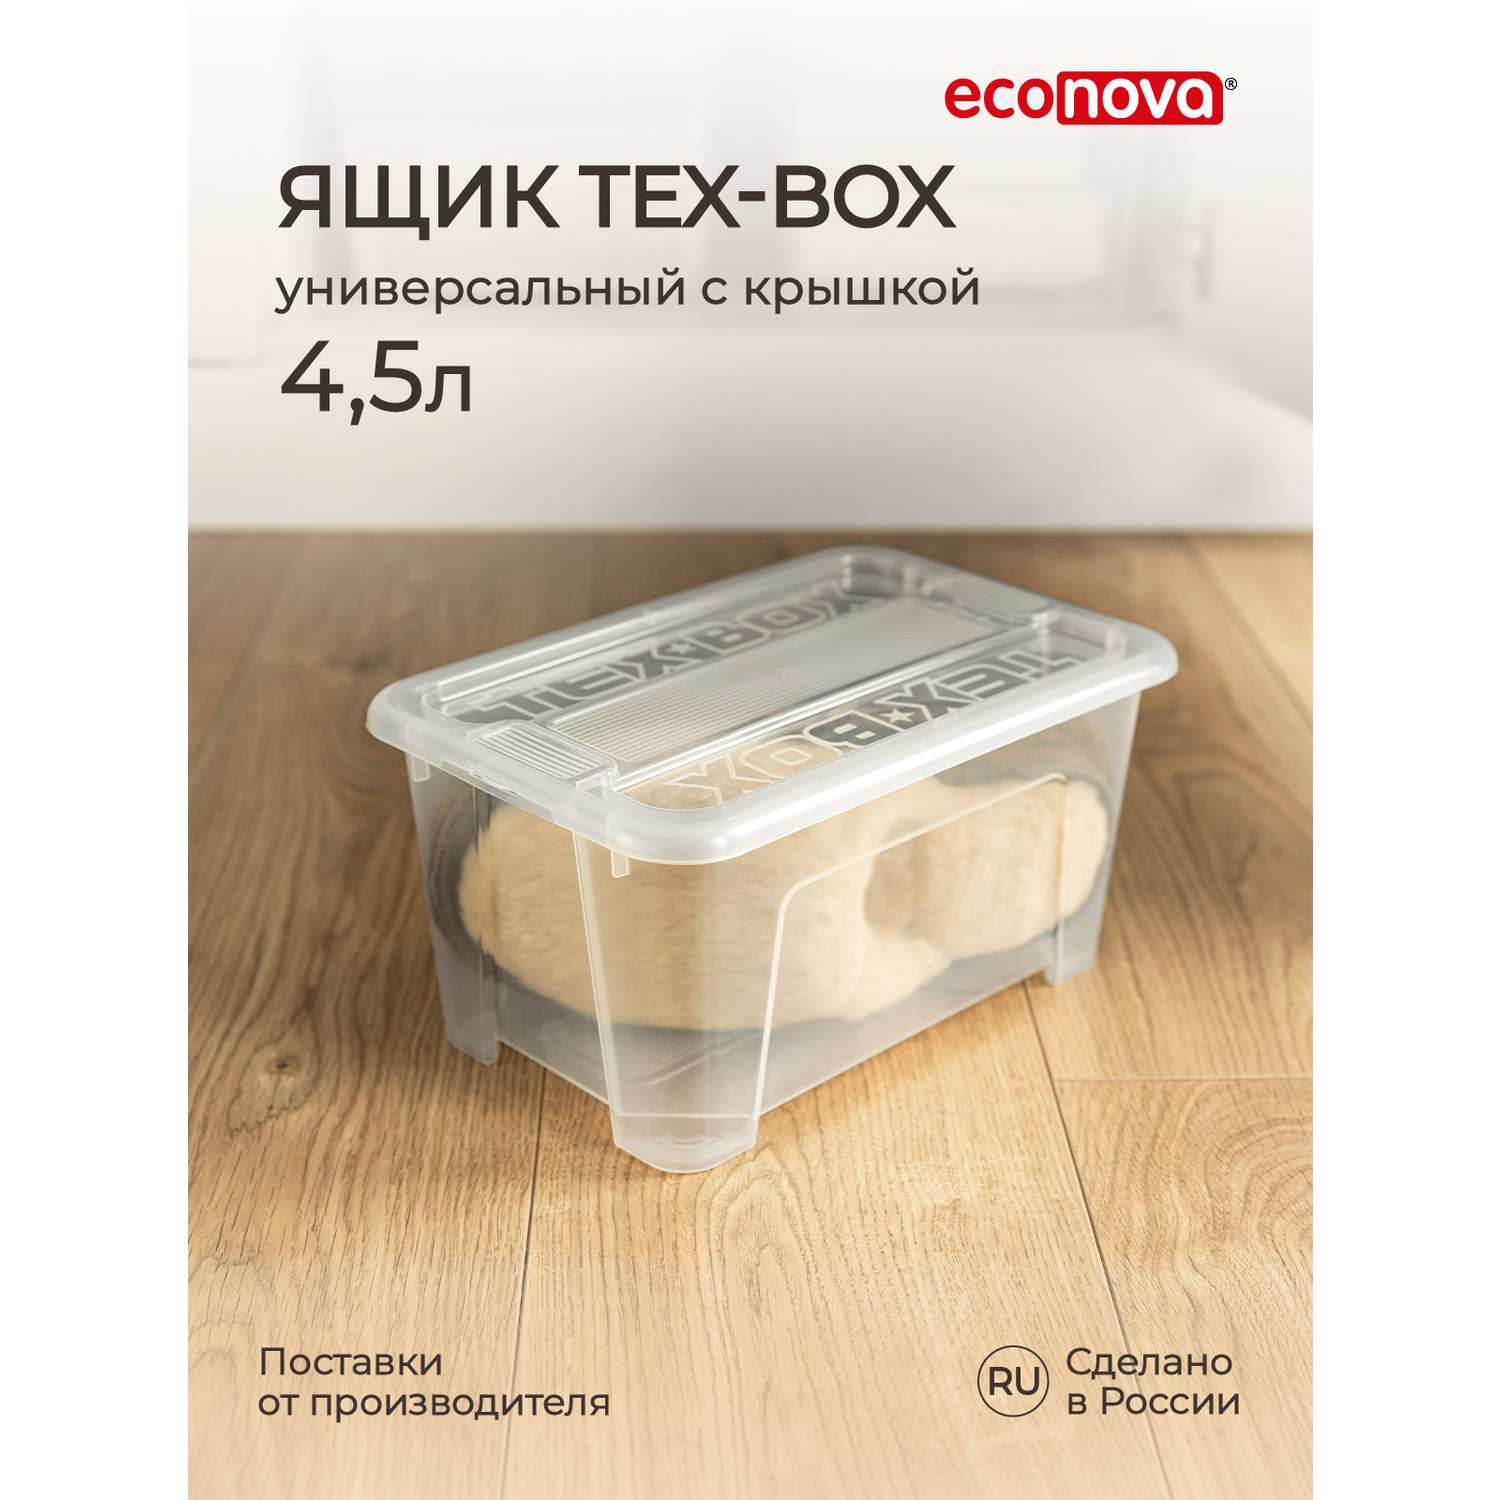 Ящик для хранения Econova TEX-BOX 4.5л бесцветный - фото 3